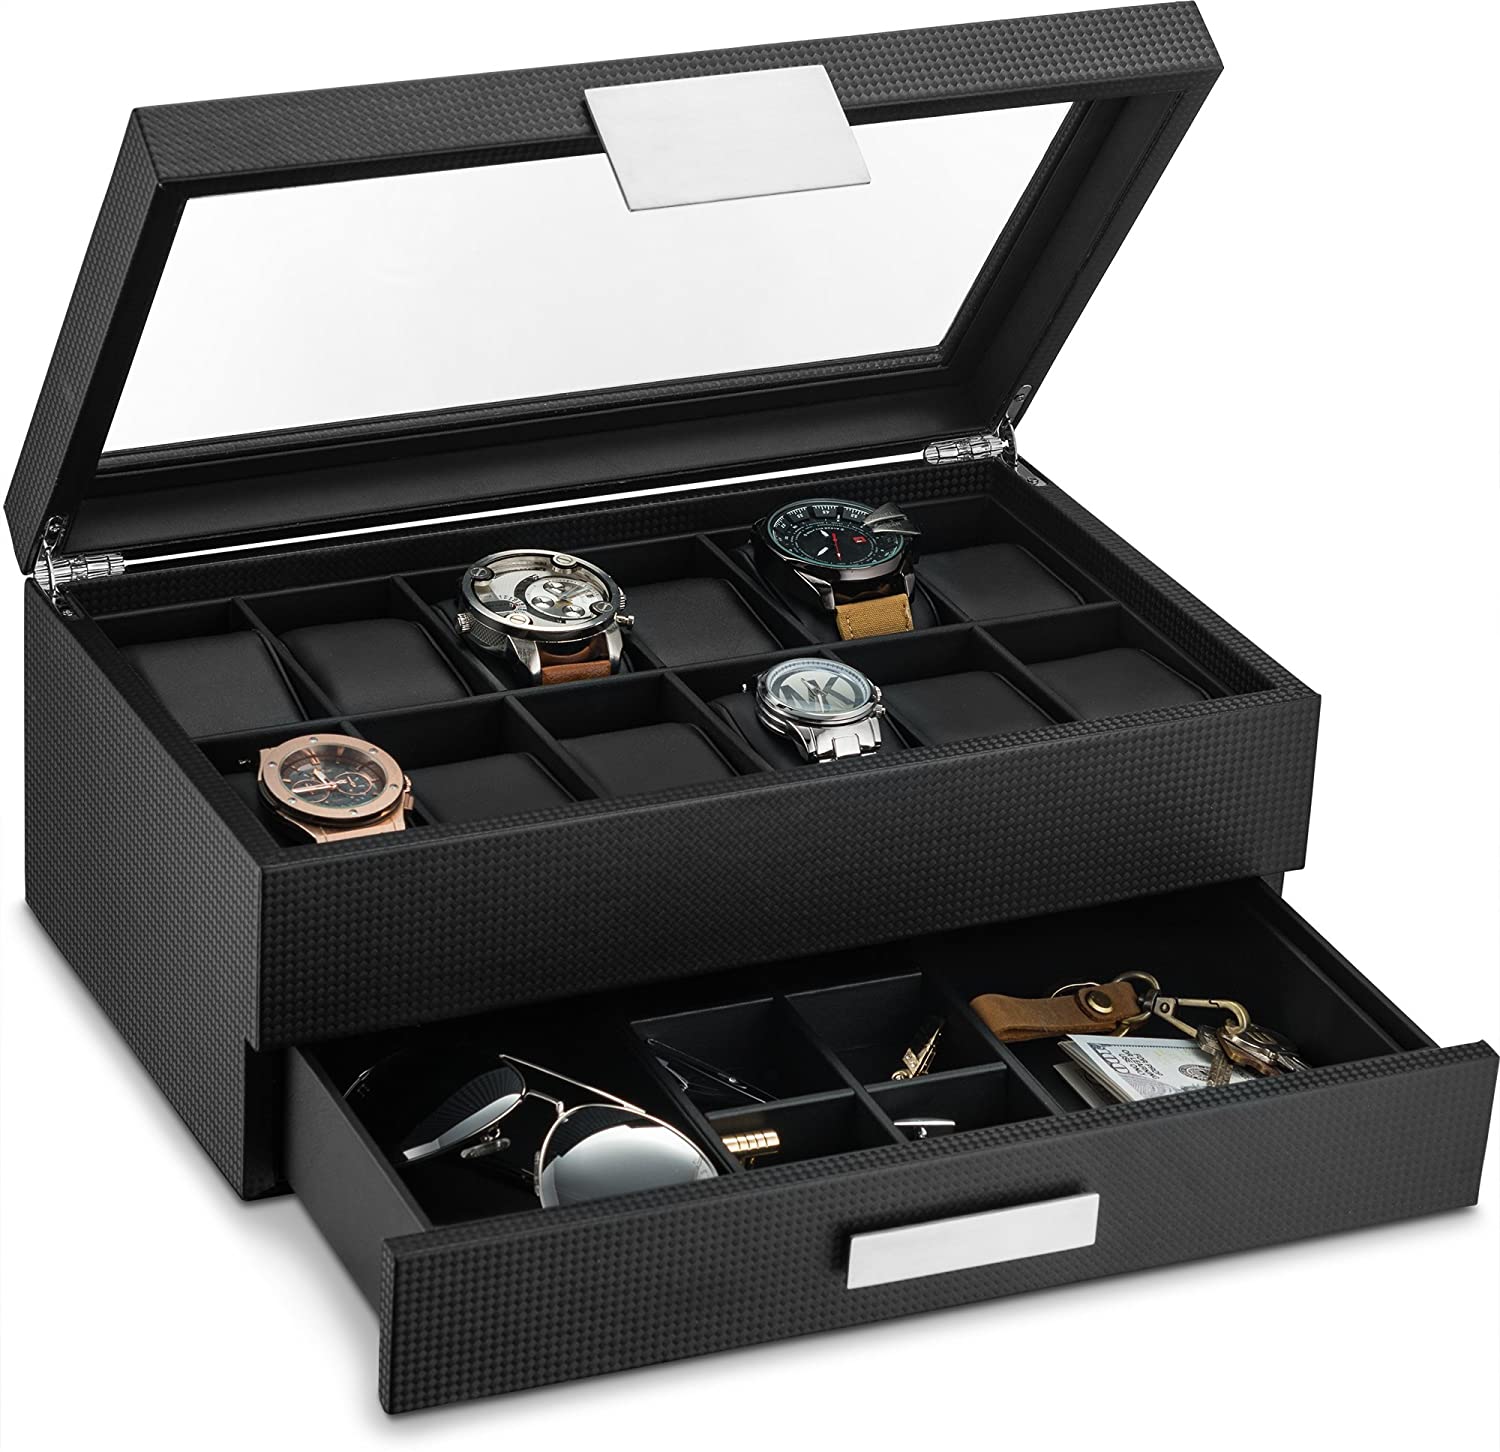 Caja para relojes de lujo negra con detalles plateados y espejo.